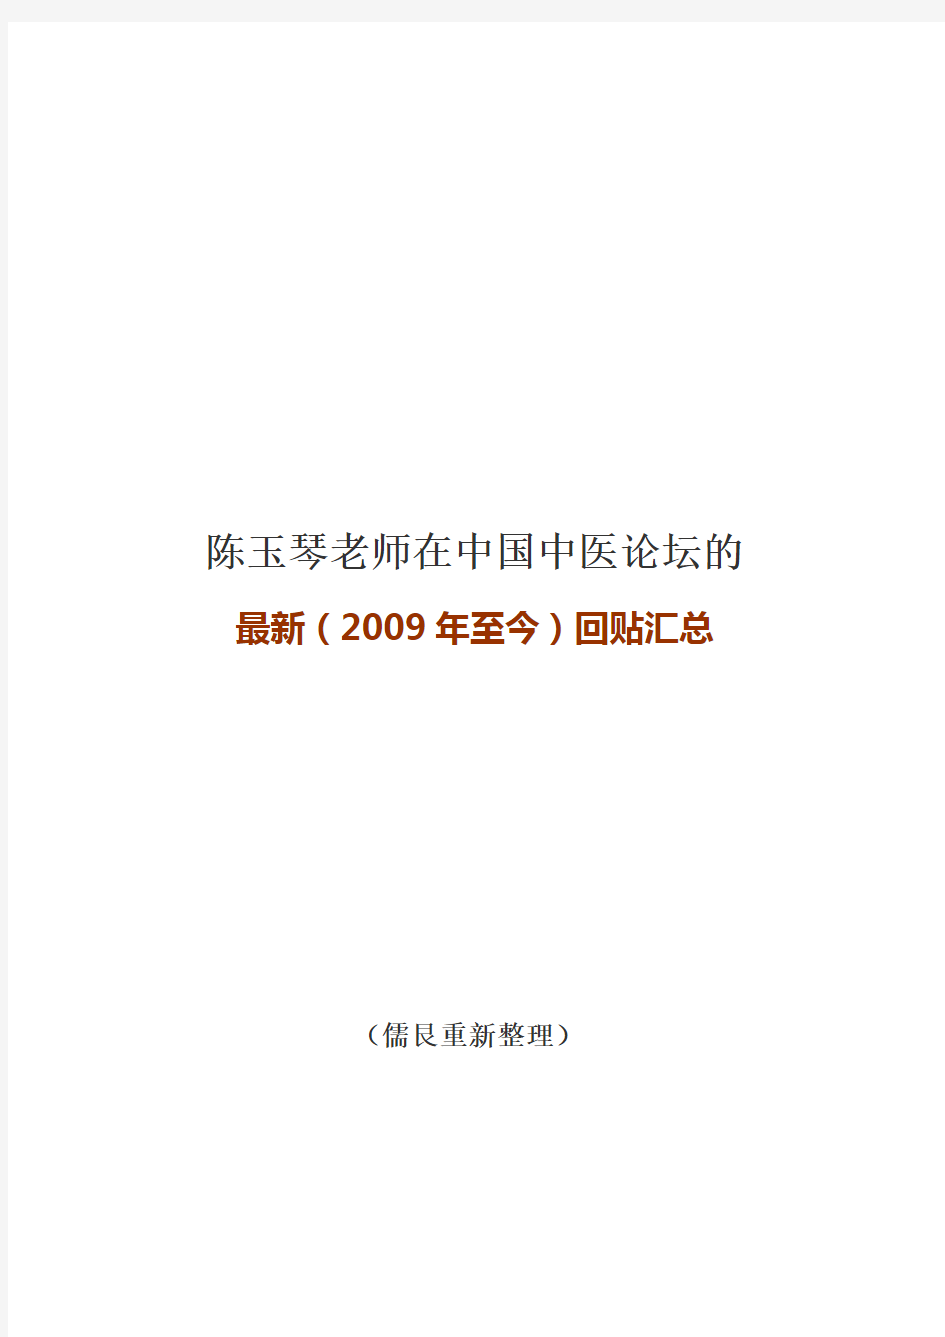 陈玉琴老师在中国中医论坛的最新(2009年至今)回贴汇总